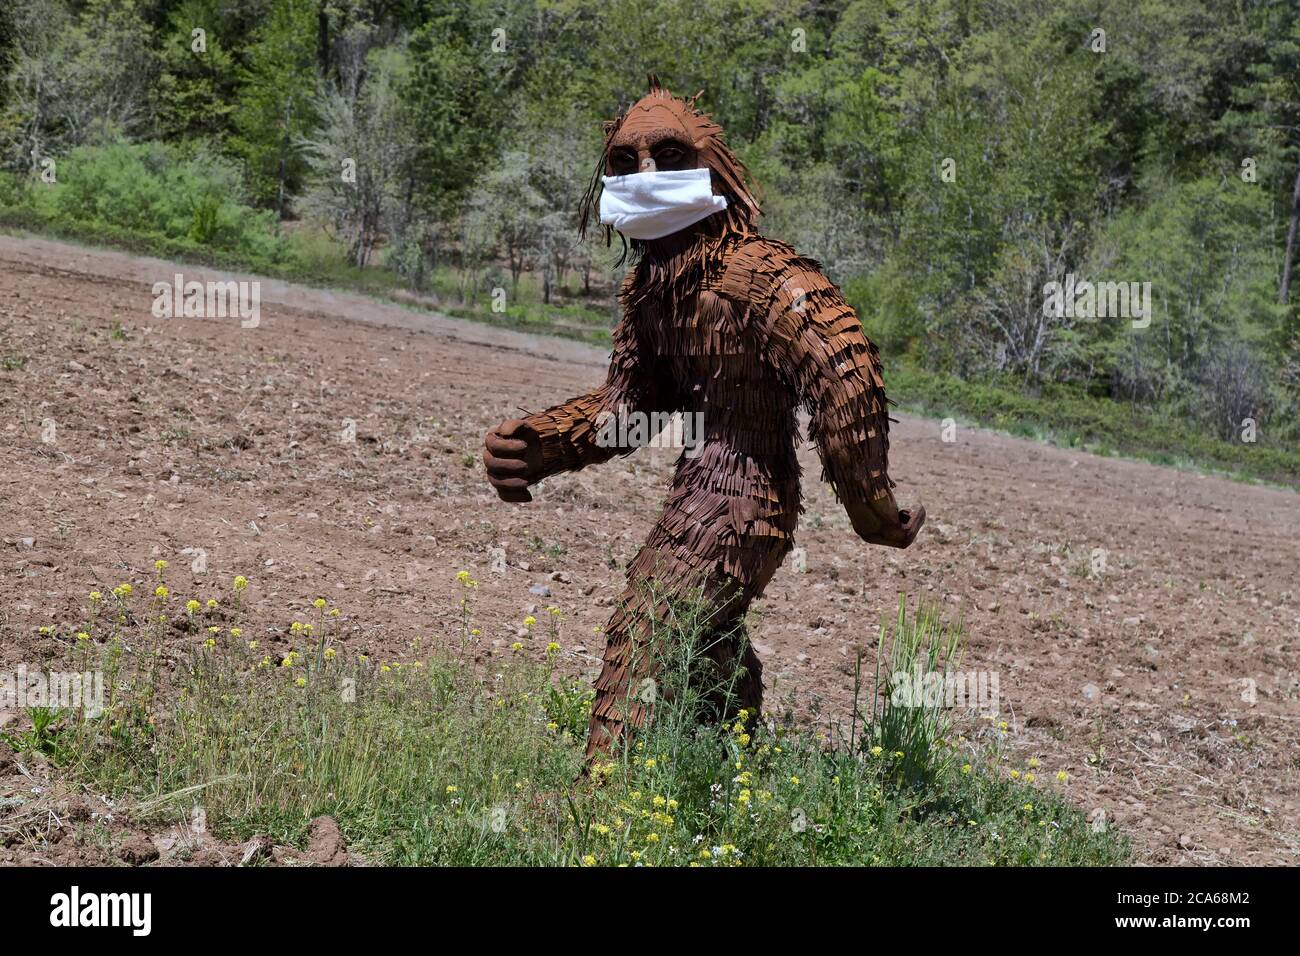 Bigfoot indossando maschera antivirus COVID-19, passando attraverso campo agricolo coltivato, foresta in background. Folklore nordamericano. Foto Stock